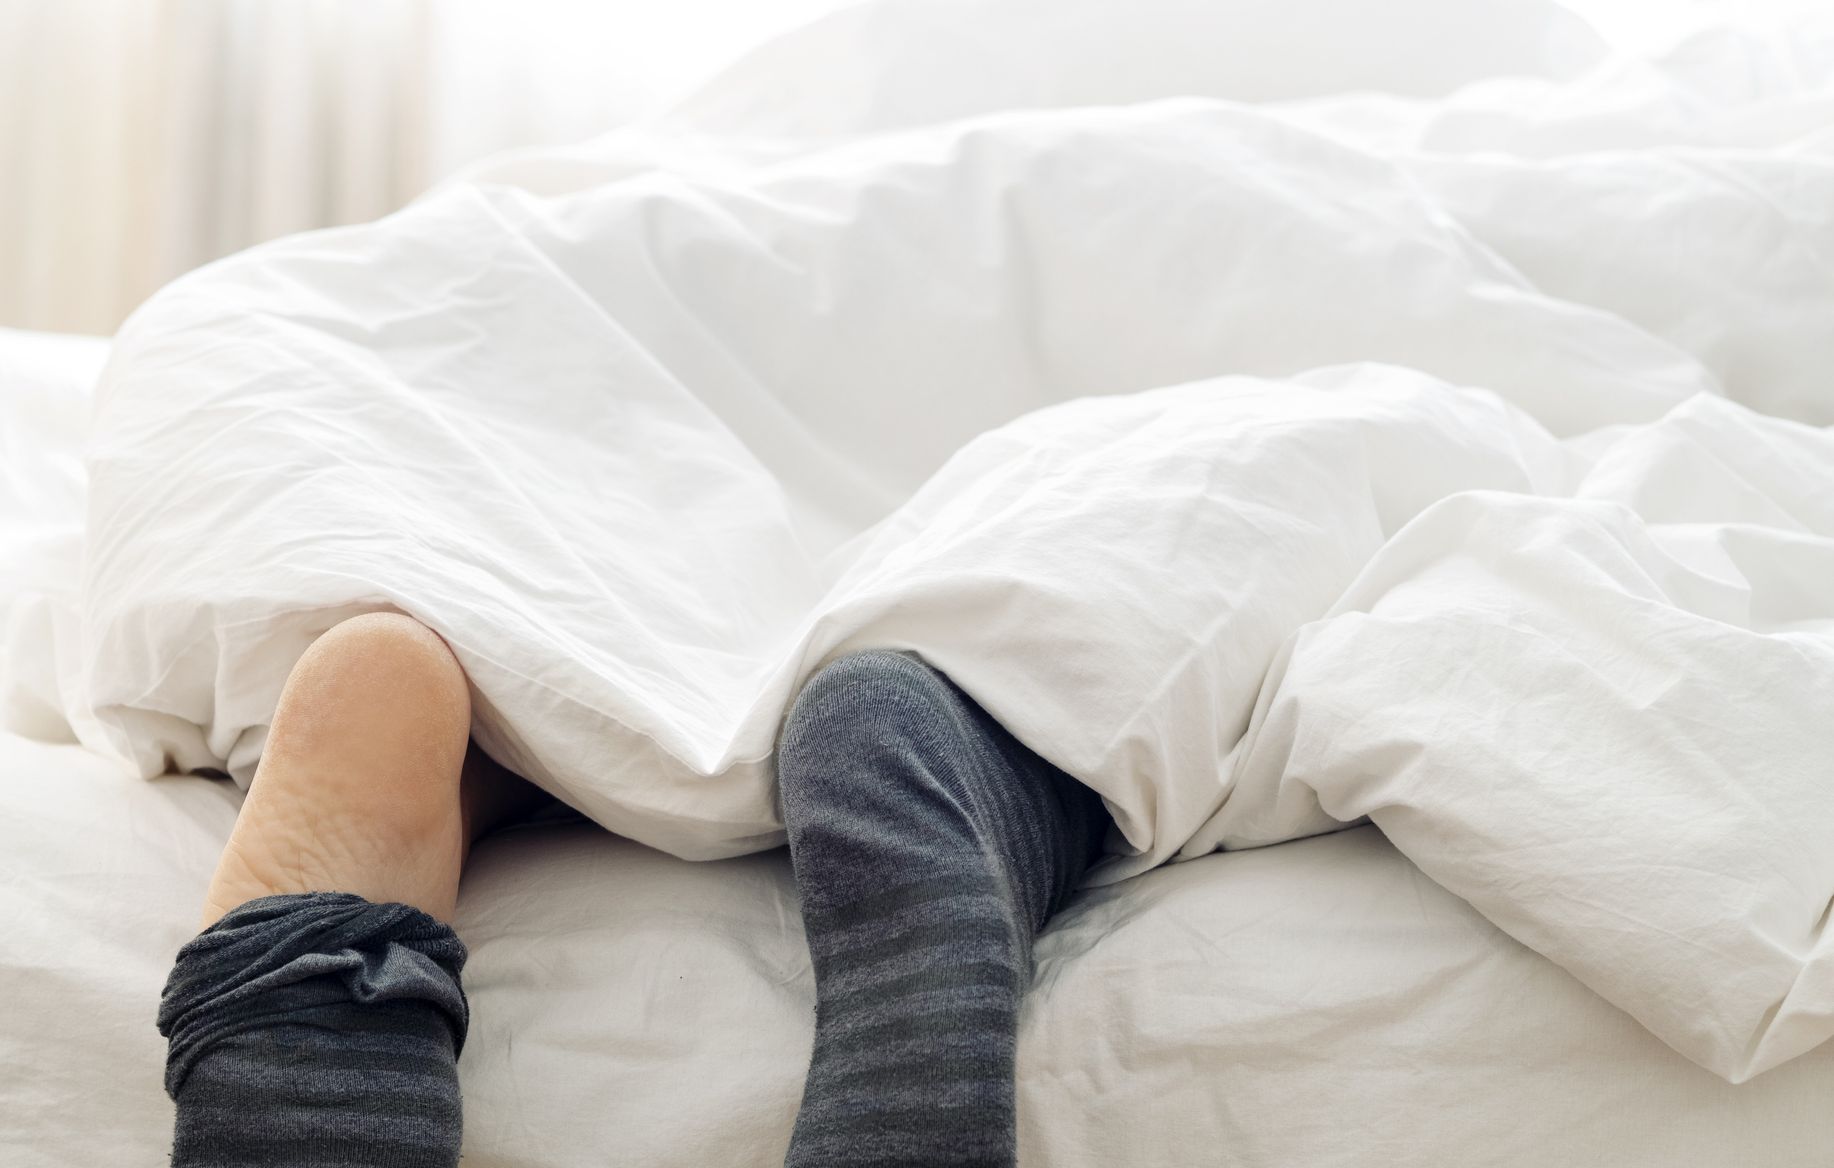 Is It Bad To Wear Socks In Bed?